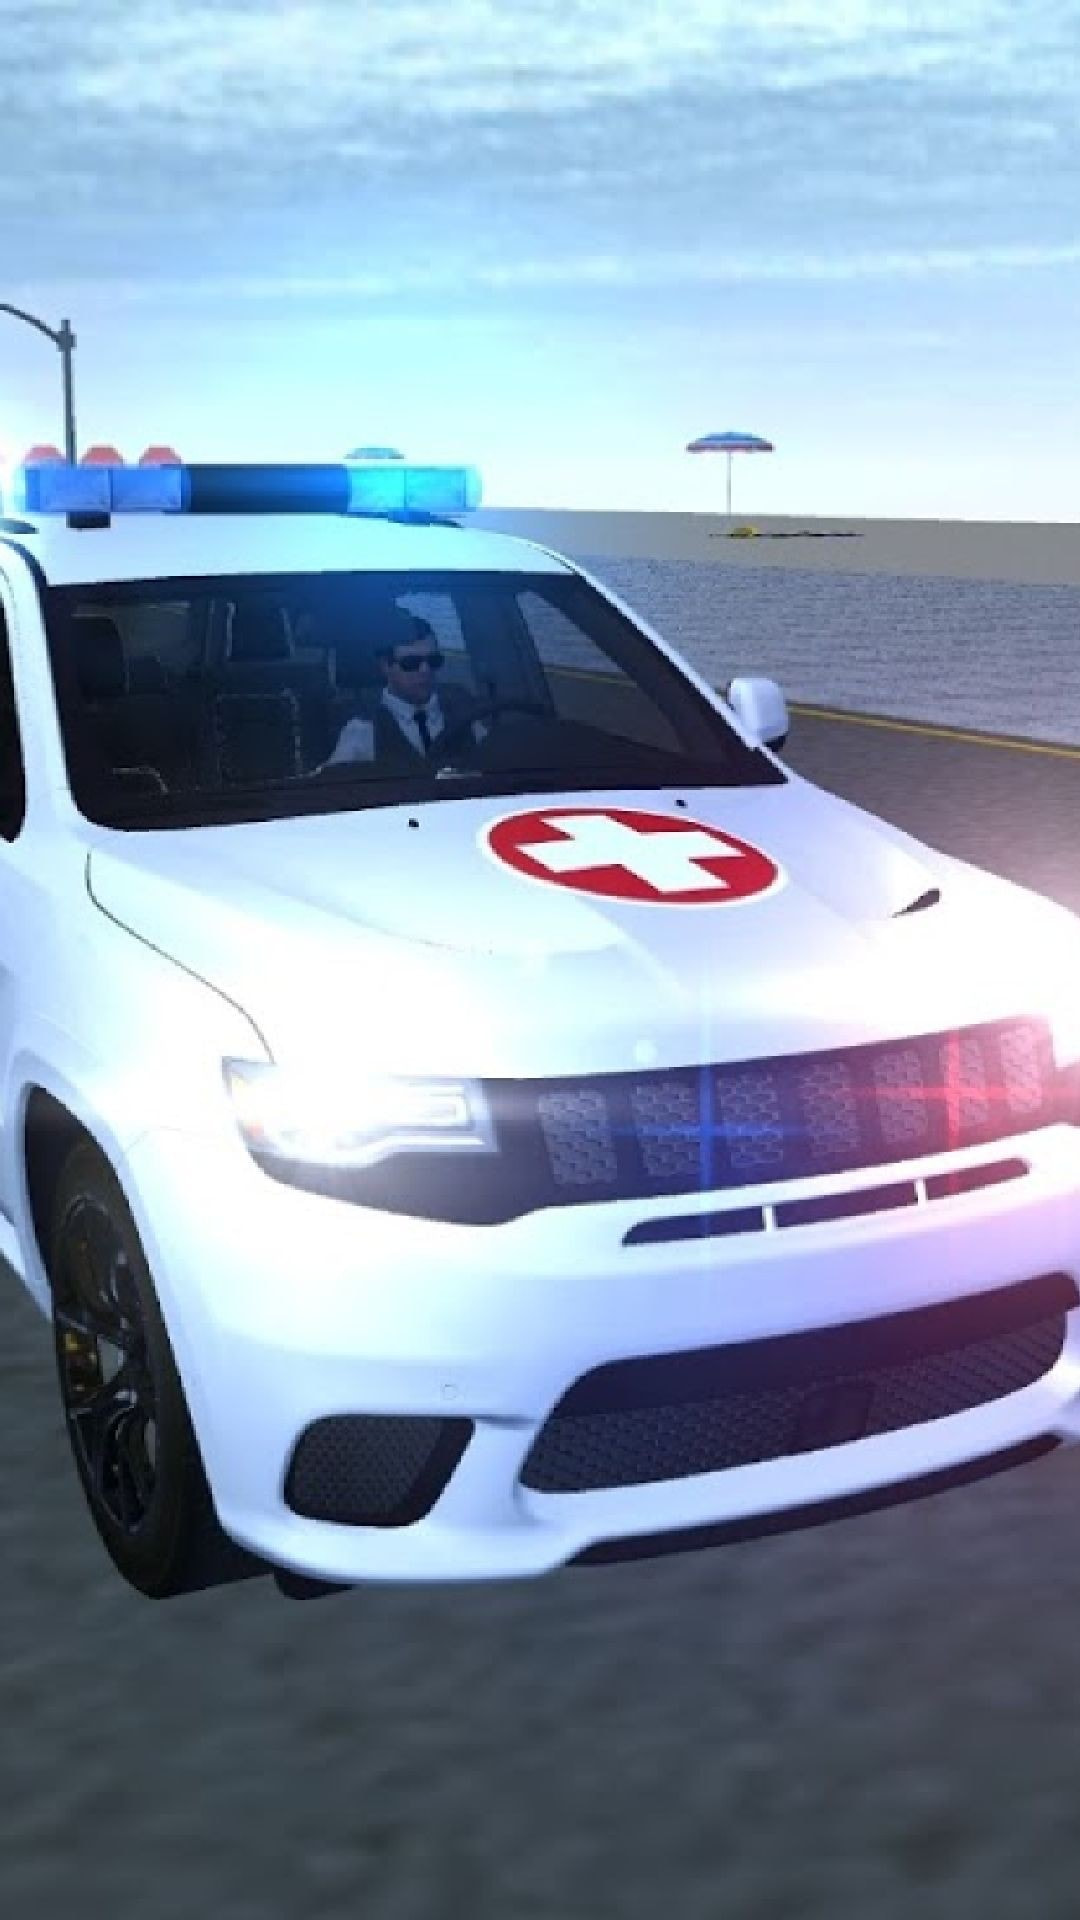 救护车应急模拟器2021截图3